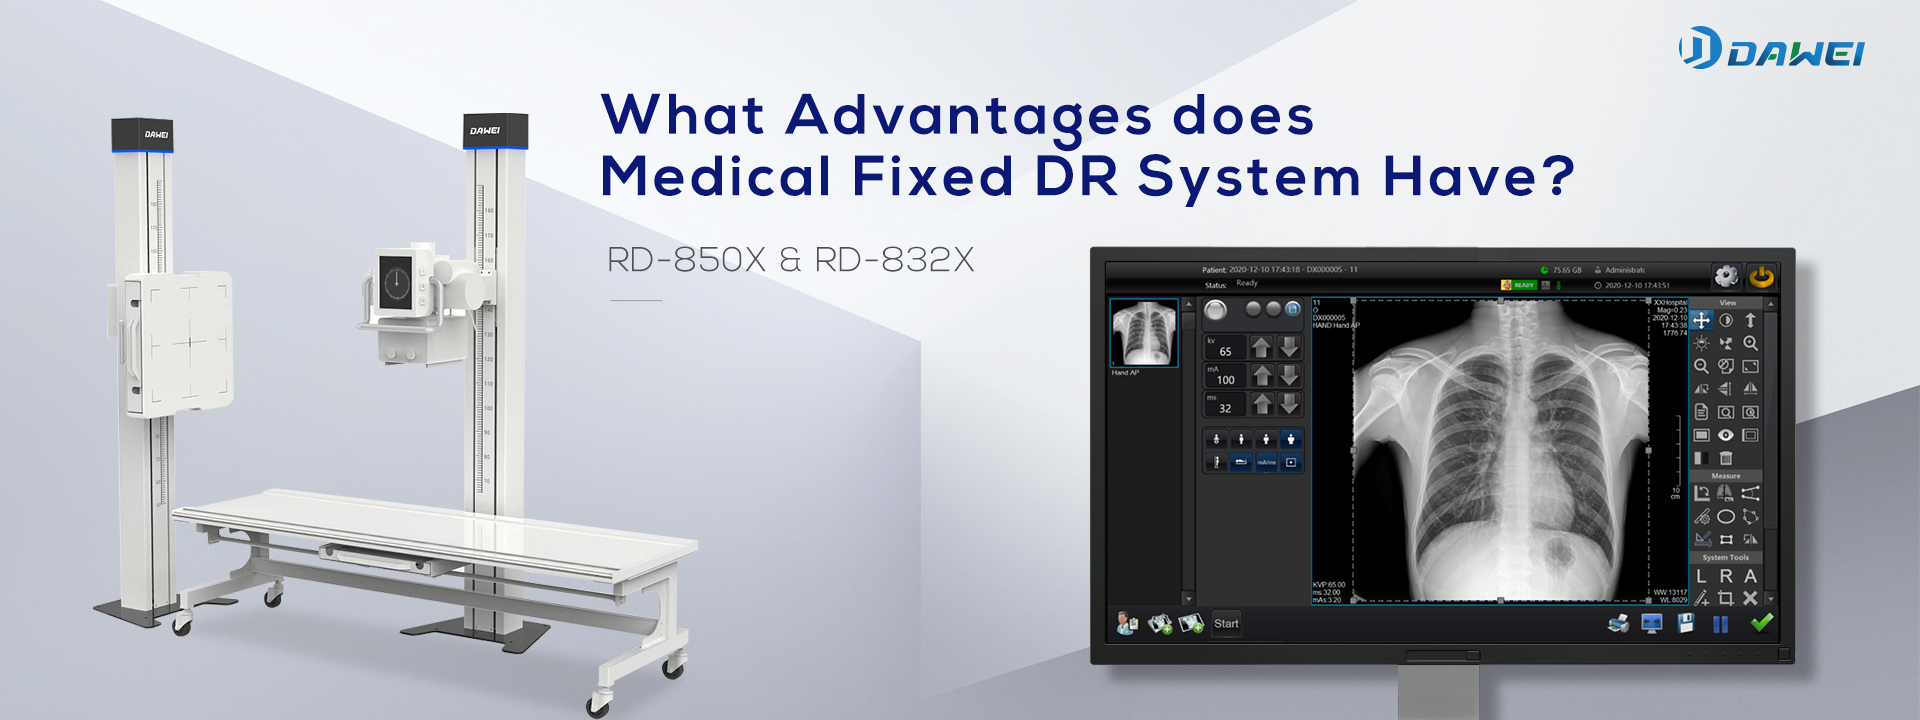 ¿Qué ventajas tiene el sistema DR fijo médico?